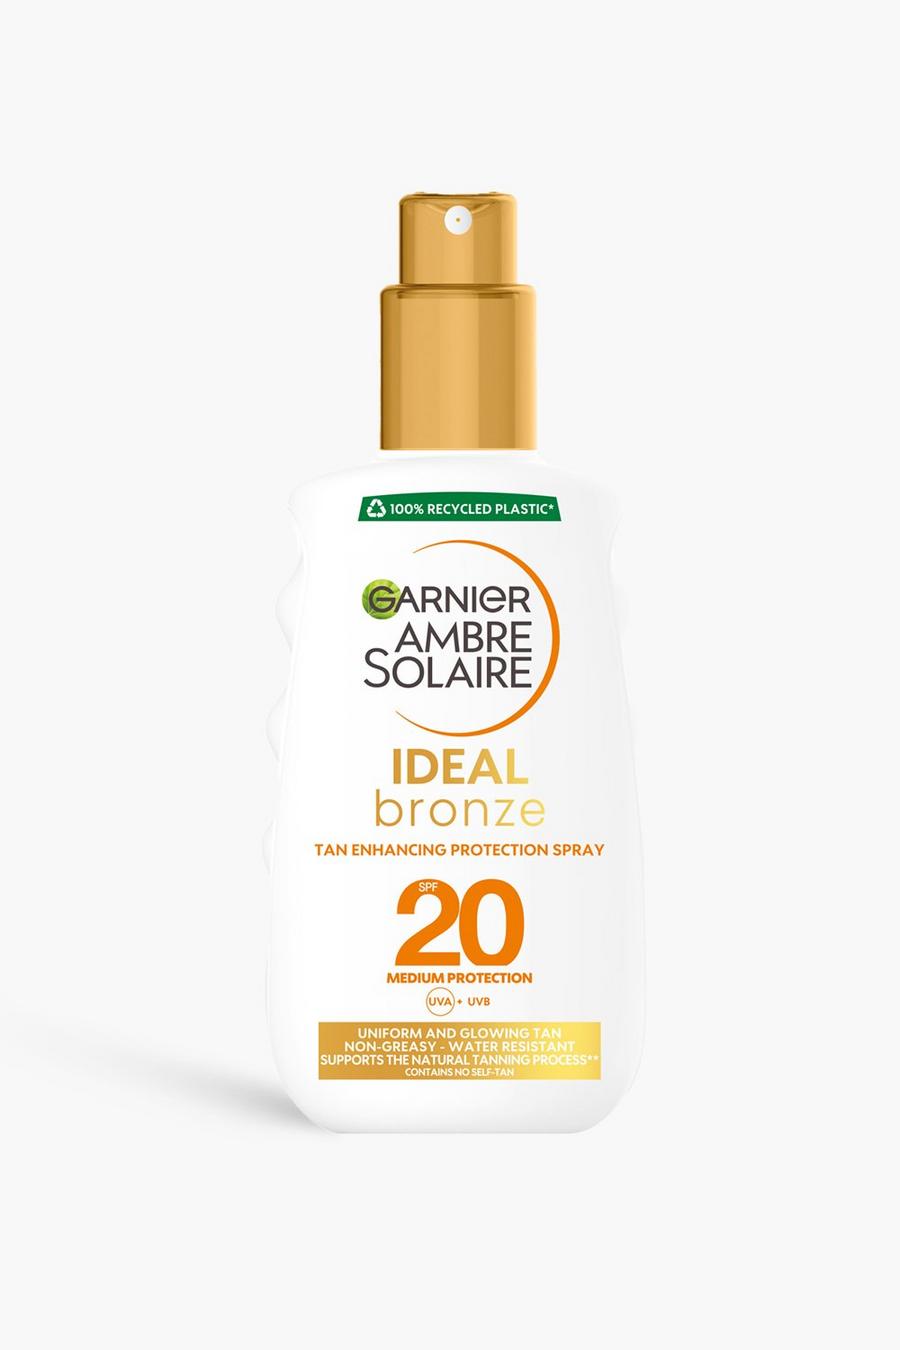 White Garnier Ambre Solaire Ideal Bronze Protective Sun Cream Spray SPF20, High Sun Protection Factor 20,  200ml (SAVE 32%)